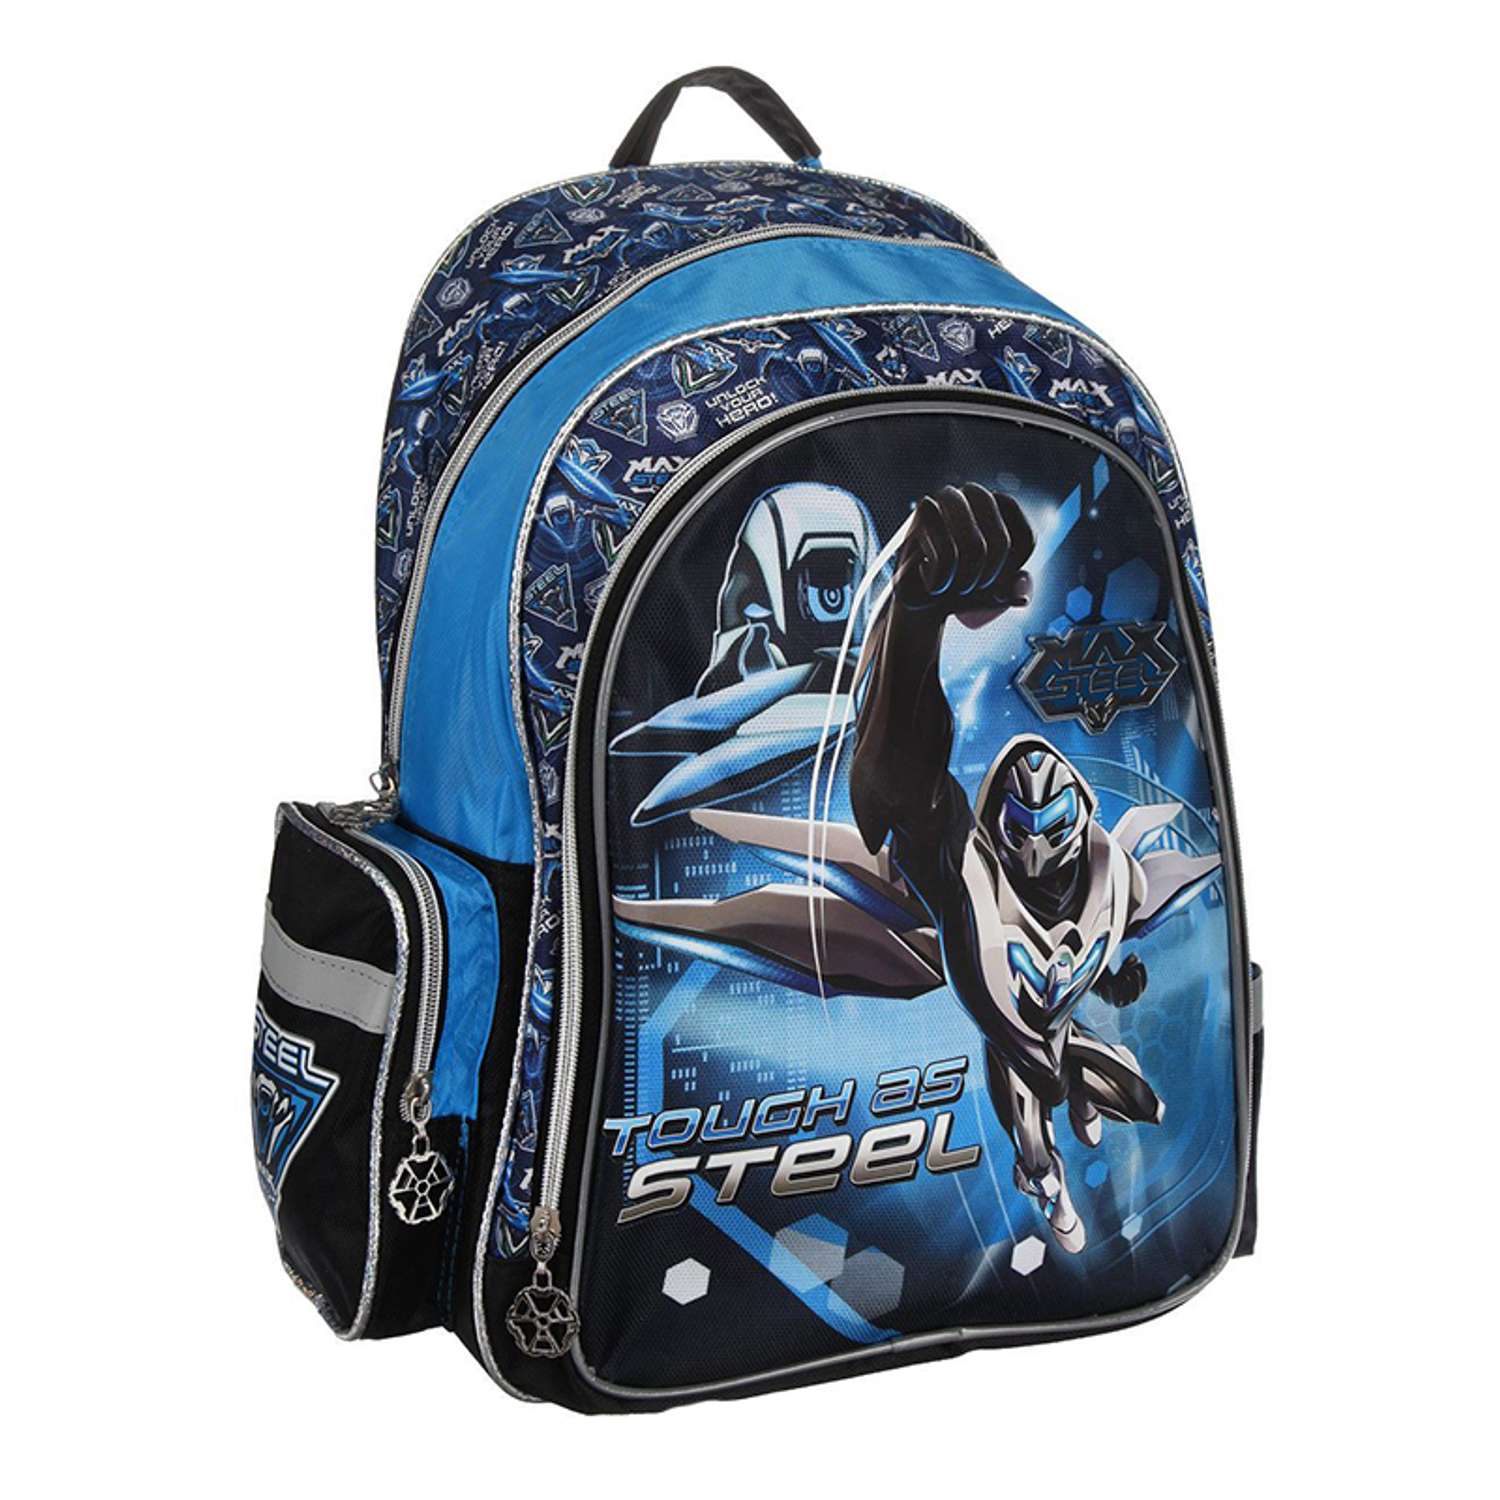 Рюкзак Max Steel школьный (сине/черный) - фото 2